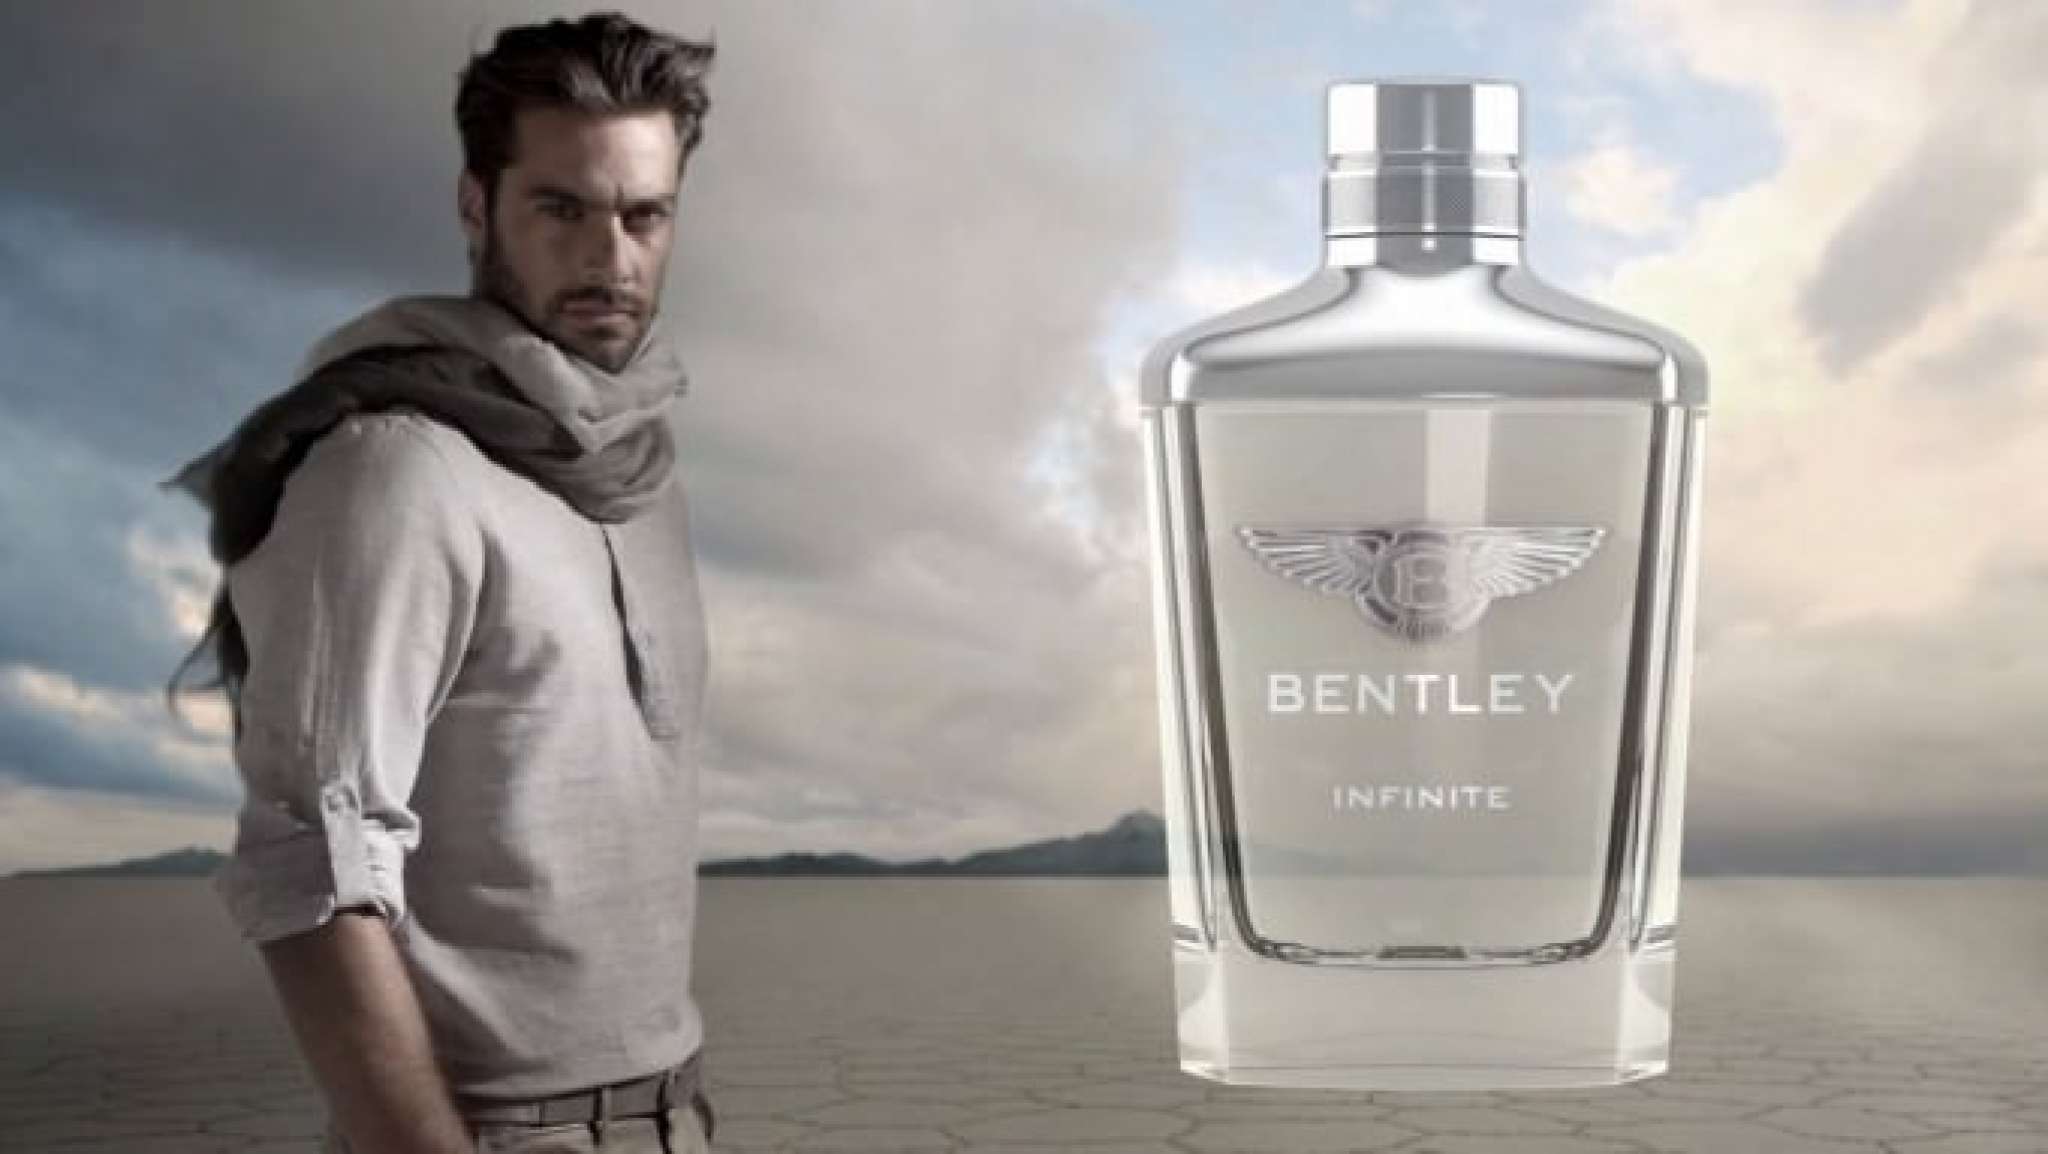 Bentley infinite fragrance 1656061316.